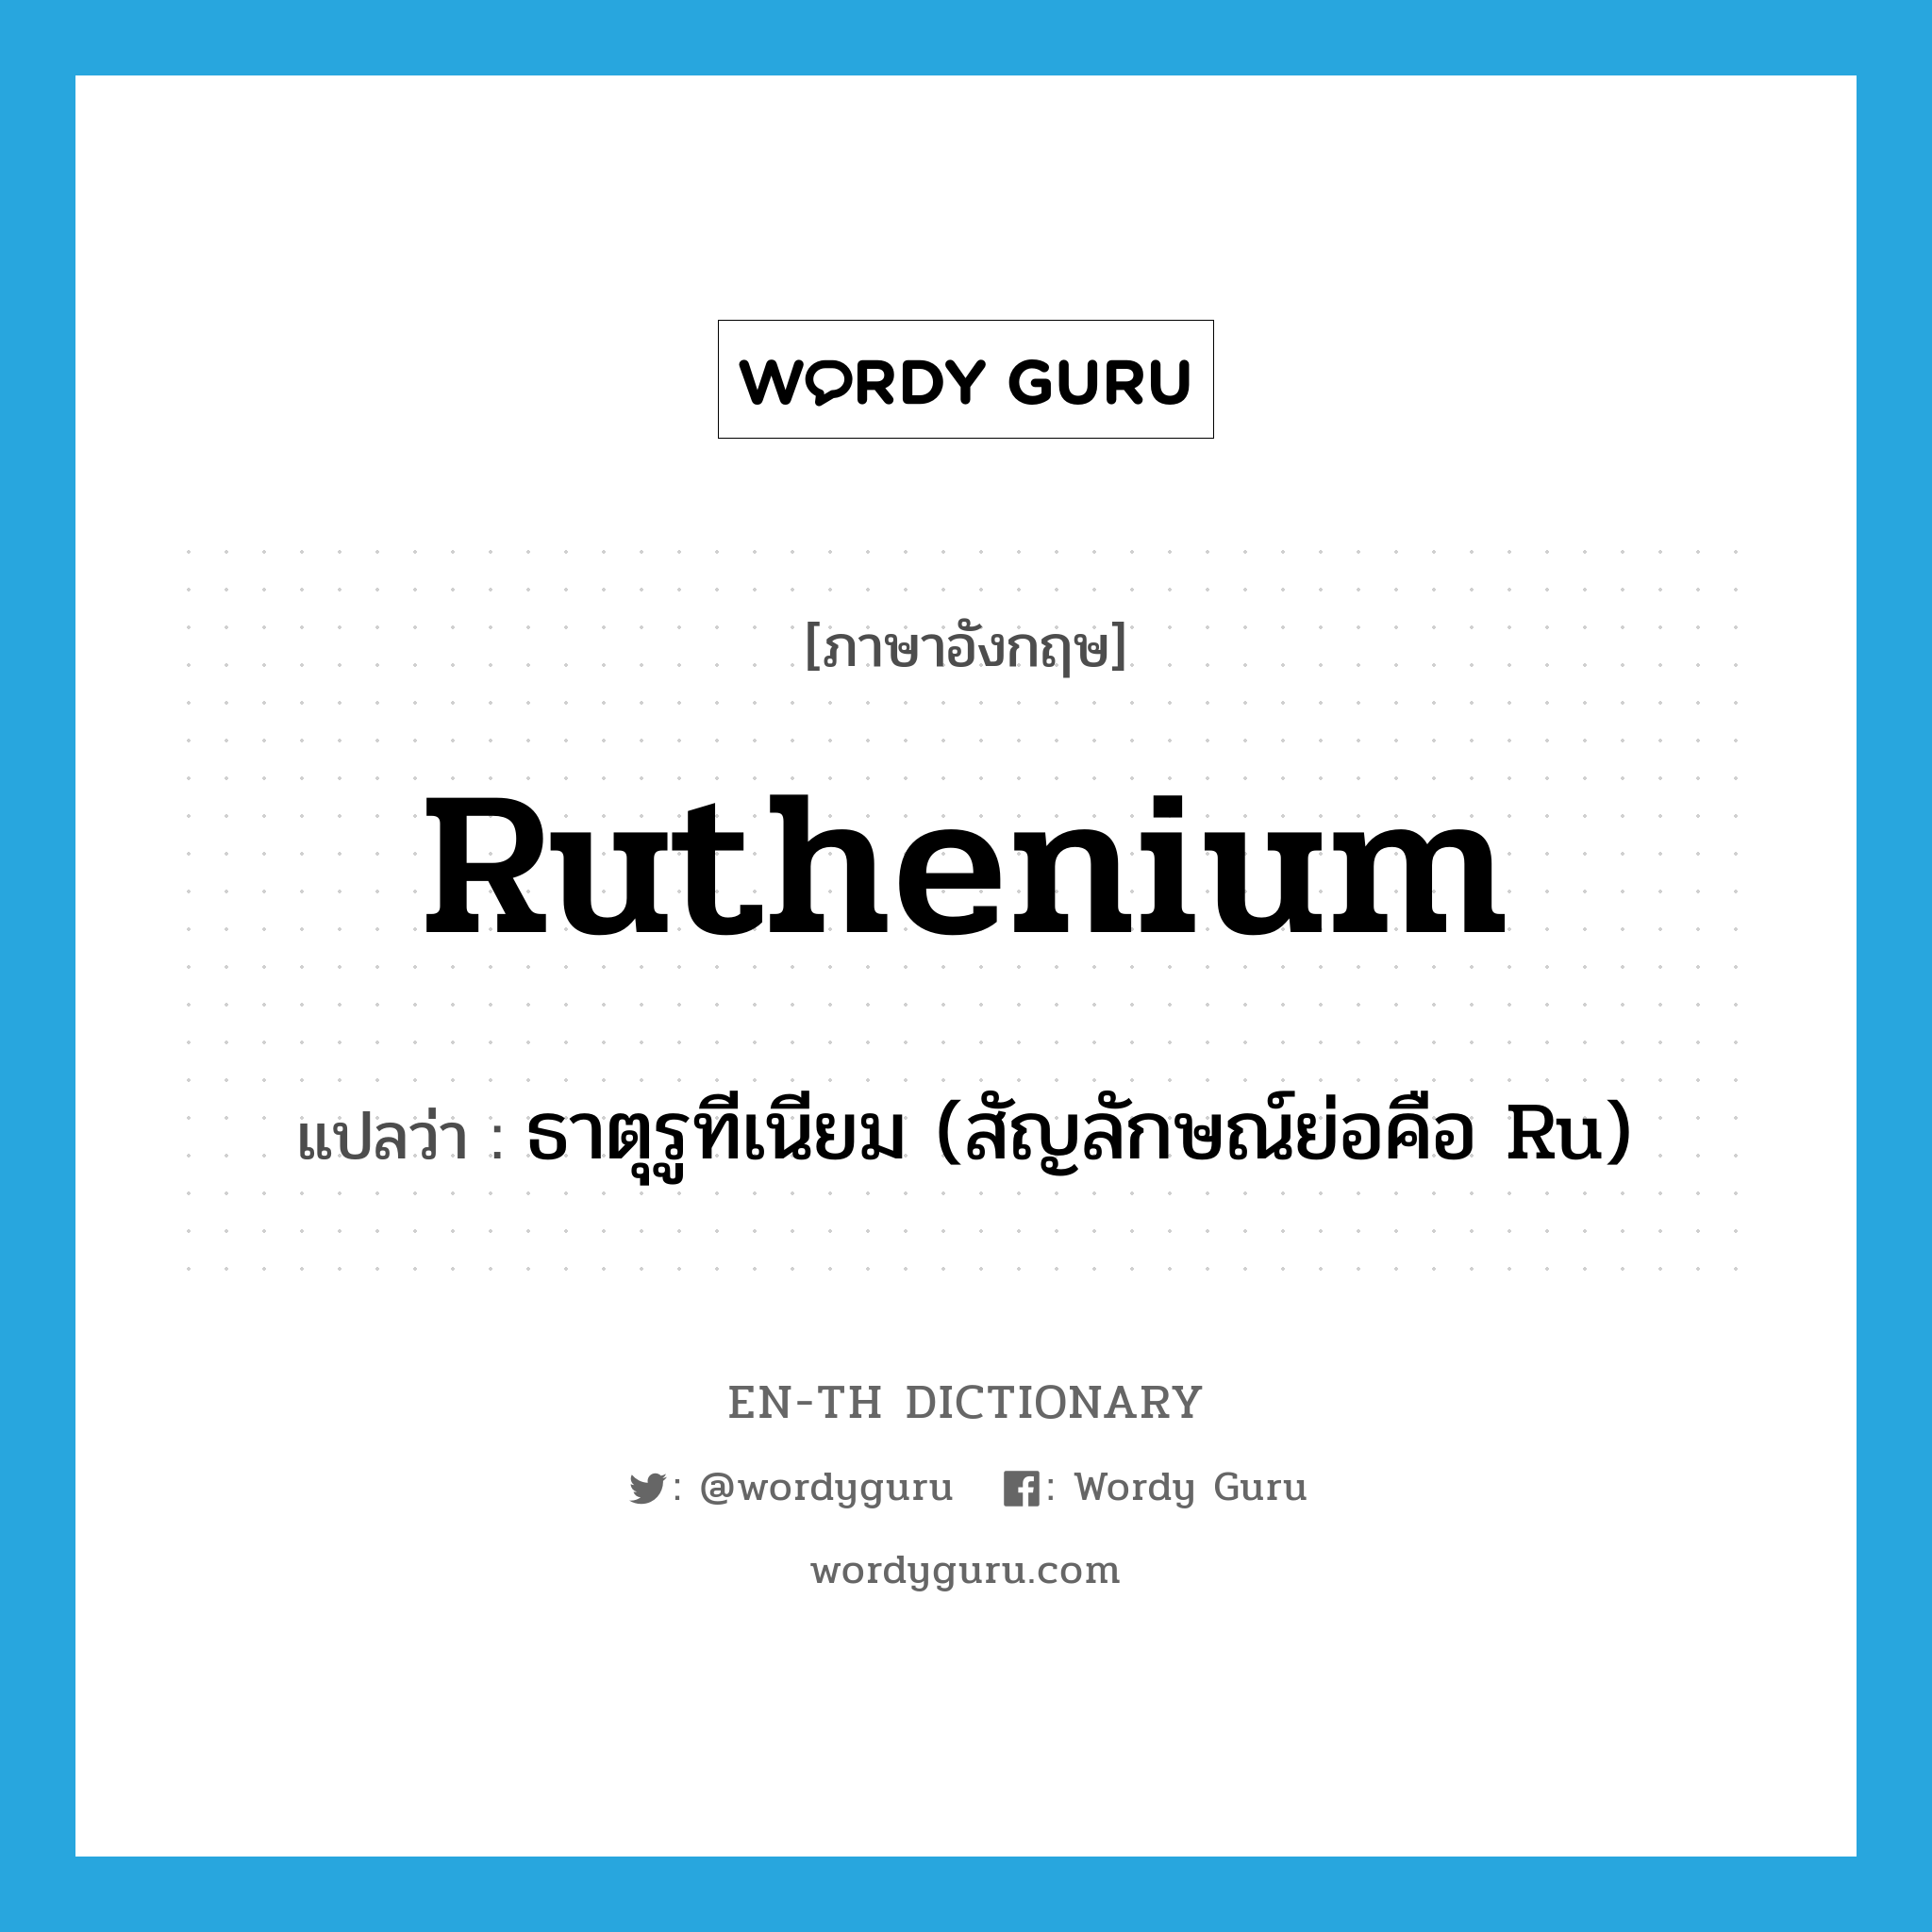 ธาตุรูทีเนียม (สัญลักษณ์ย่อคือ Ru) ภาษาอังกฤษ?, คำศัพท์ภาษาอังกฤษ ธาตุรูทีเนียม (สัญลักษณ์ย่อคือ Ru) แปลว่า ruthenium ประเภท N หมวด N